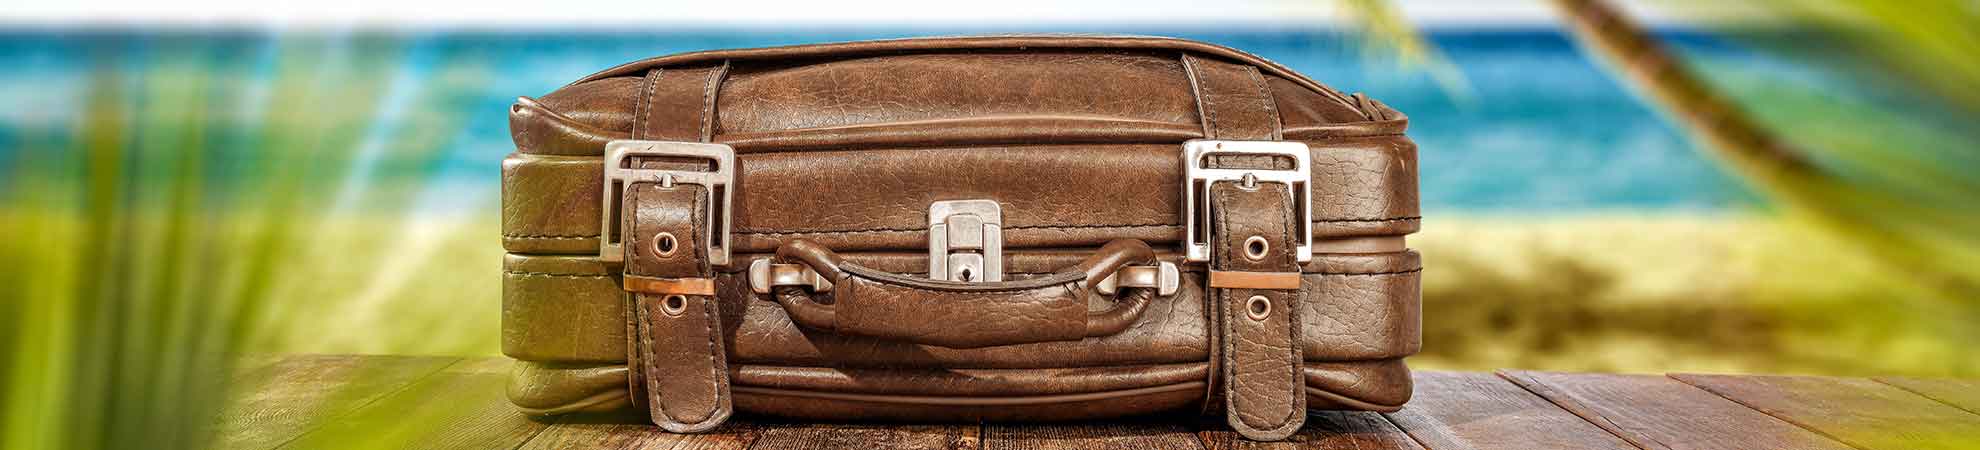 Préparez votre valise pour un voyage à Cuba !